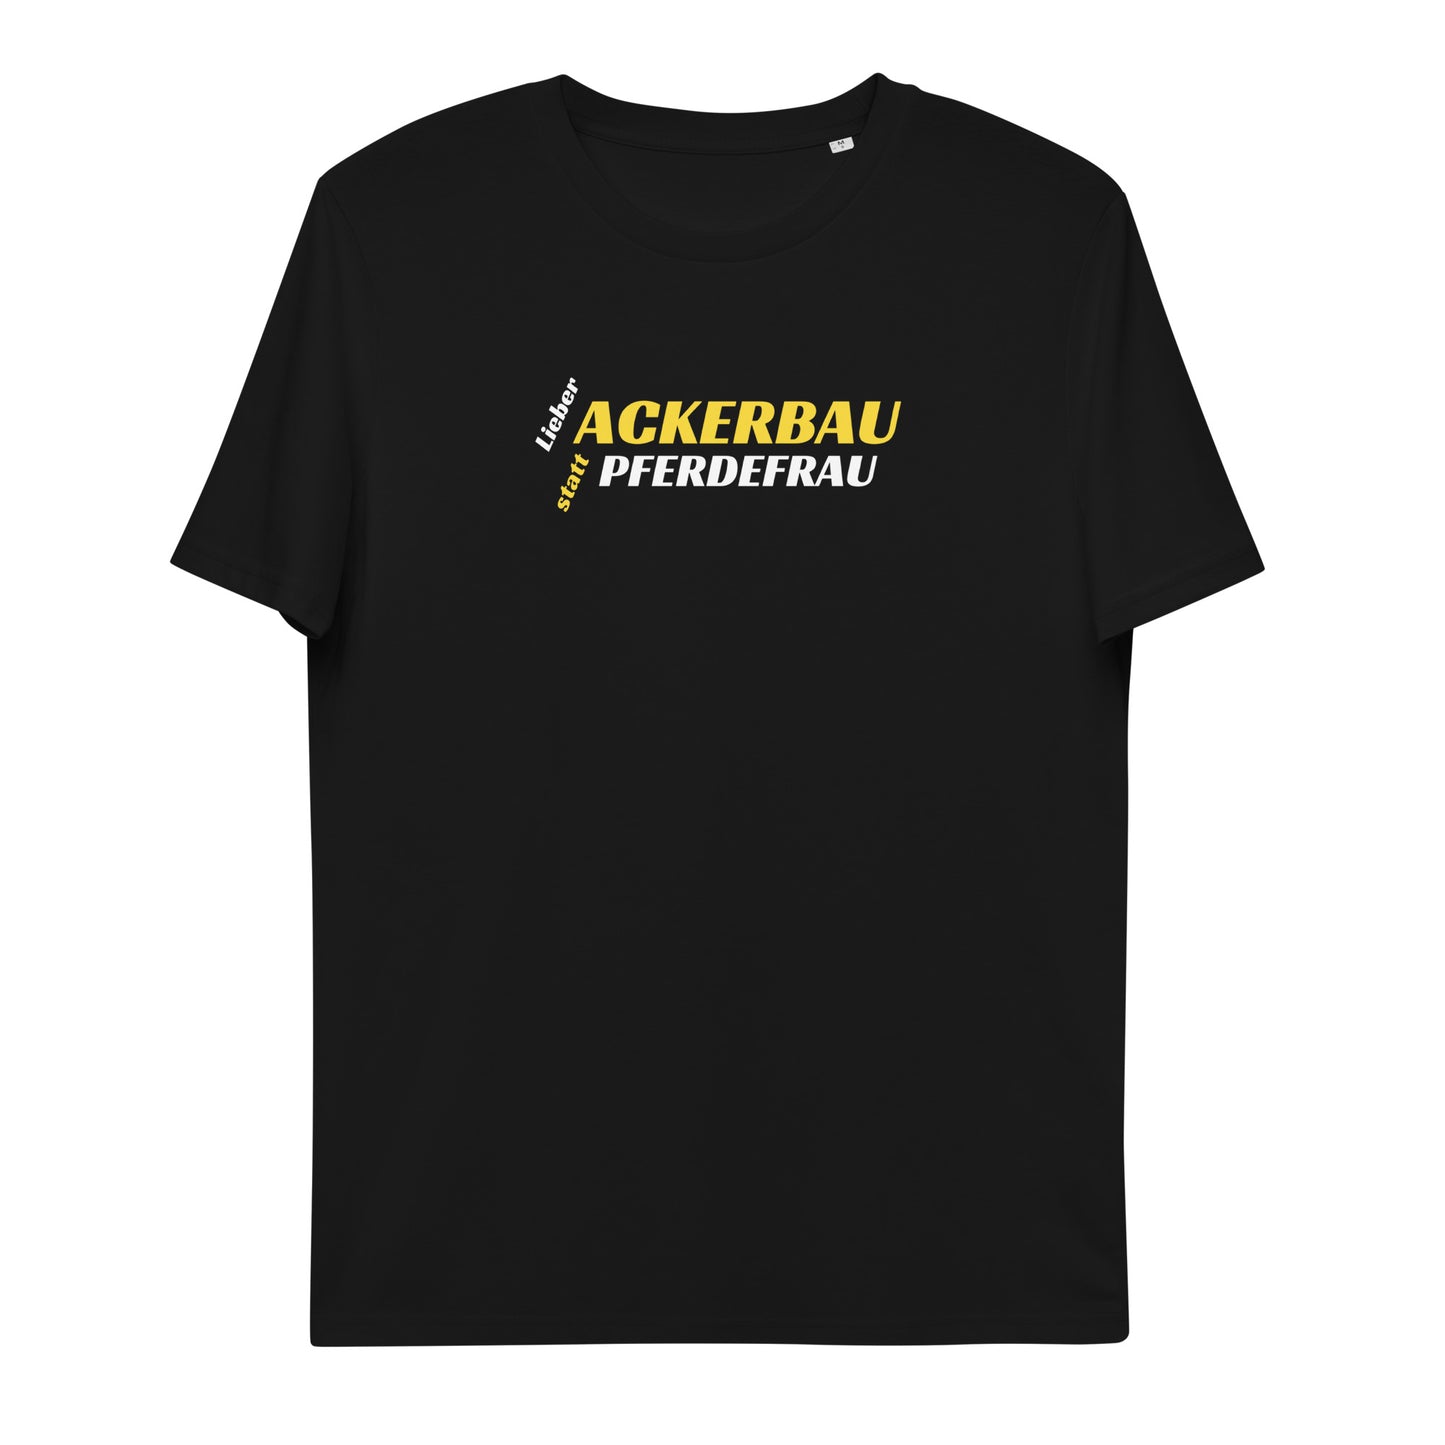 Ackerbau - Unisex T-Shirt